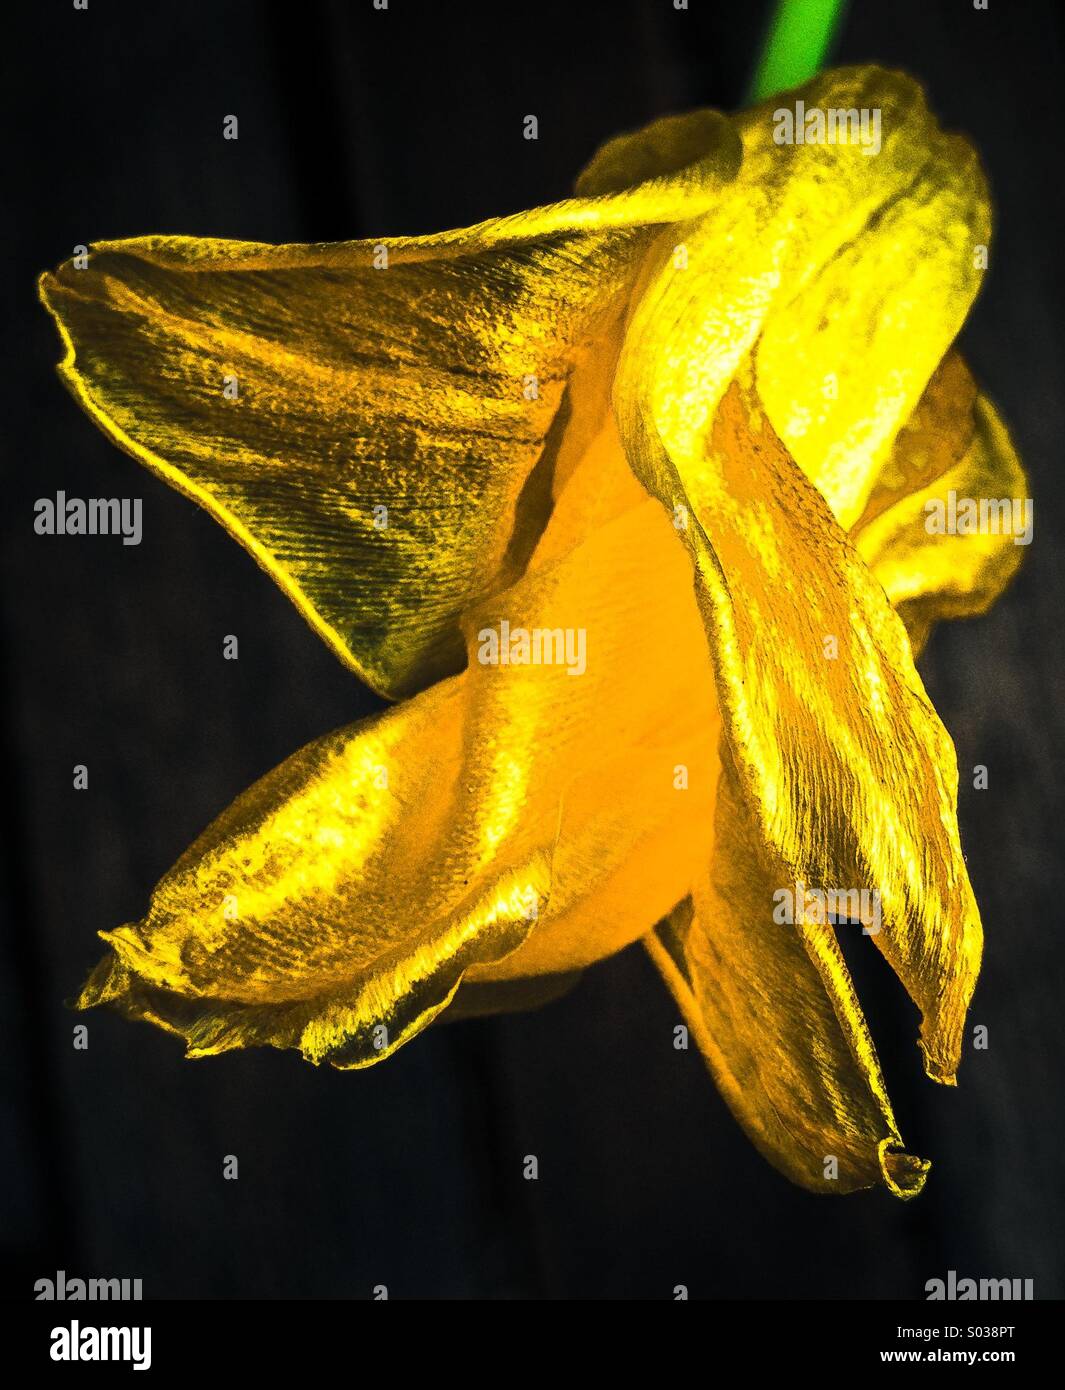 Wilting yellow tulip flower Stock Photo